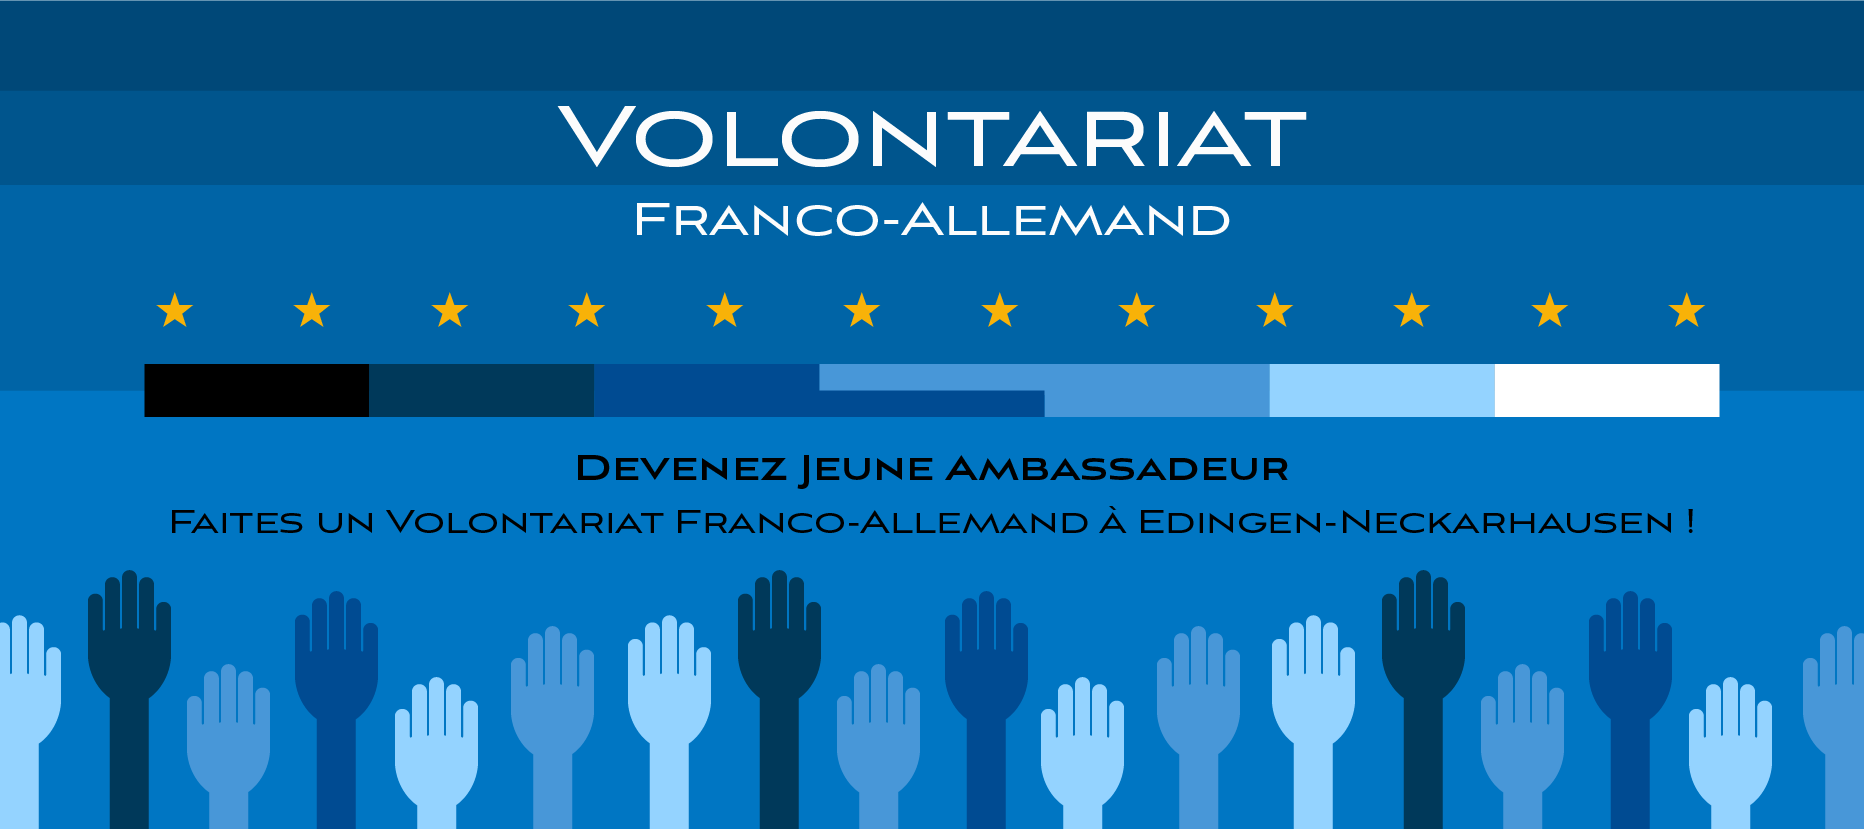 Haut les mains pour le volontariat franco-allemand